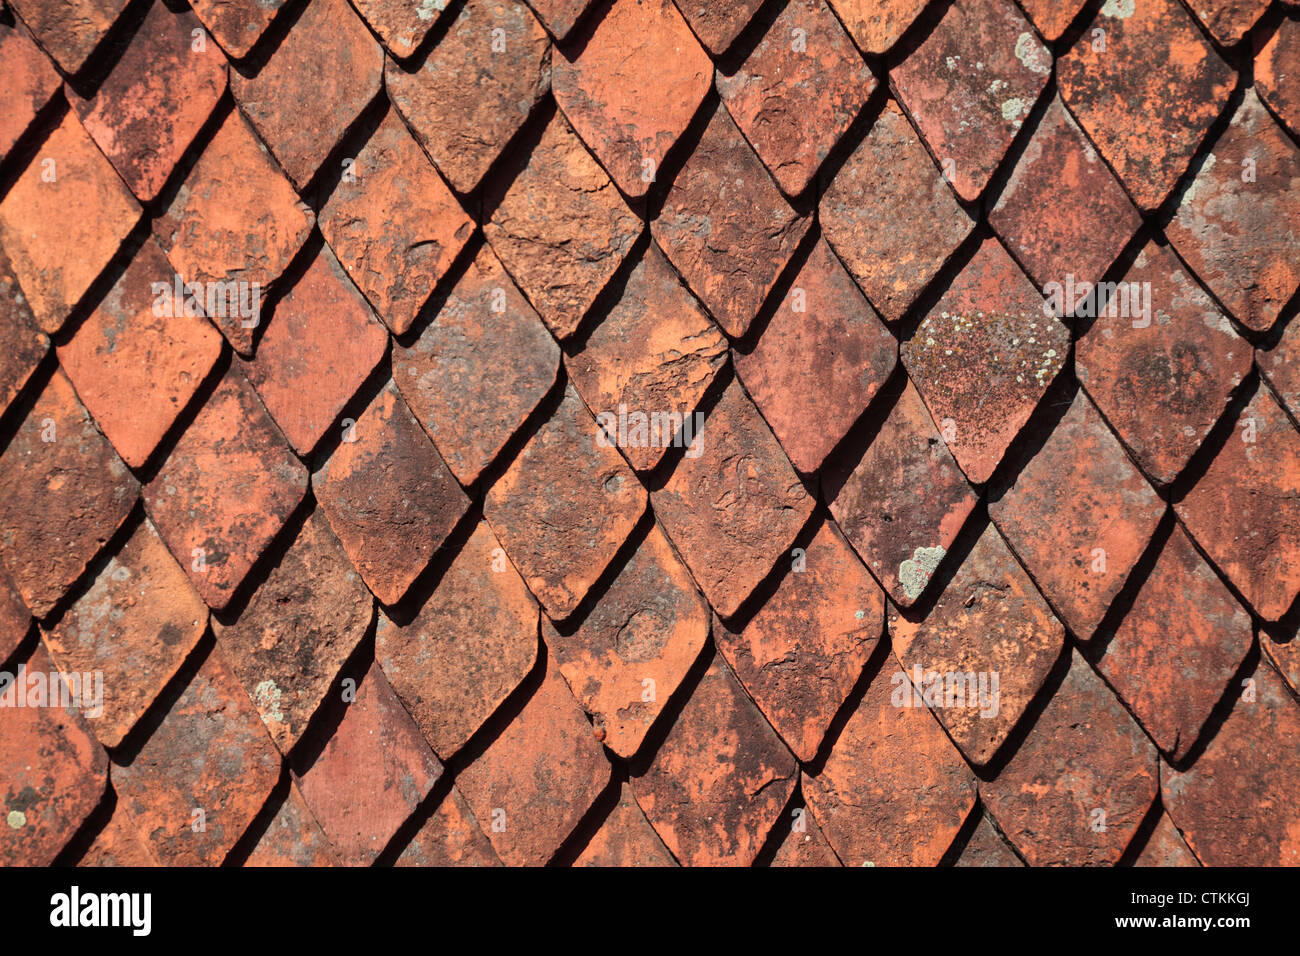 Terracotta roof tiles in the citadel in Rasnov, Romania Stock Photo